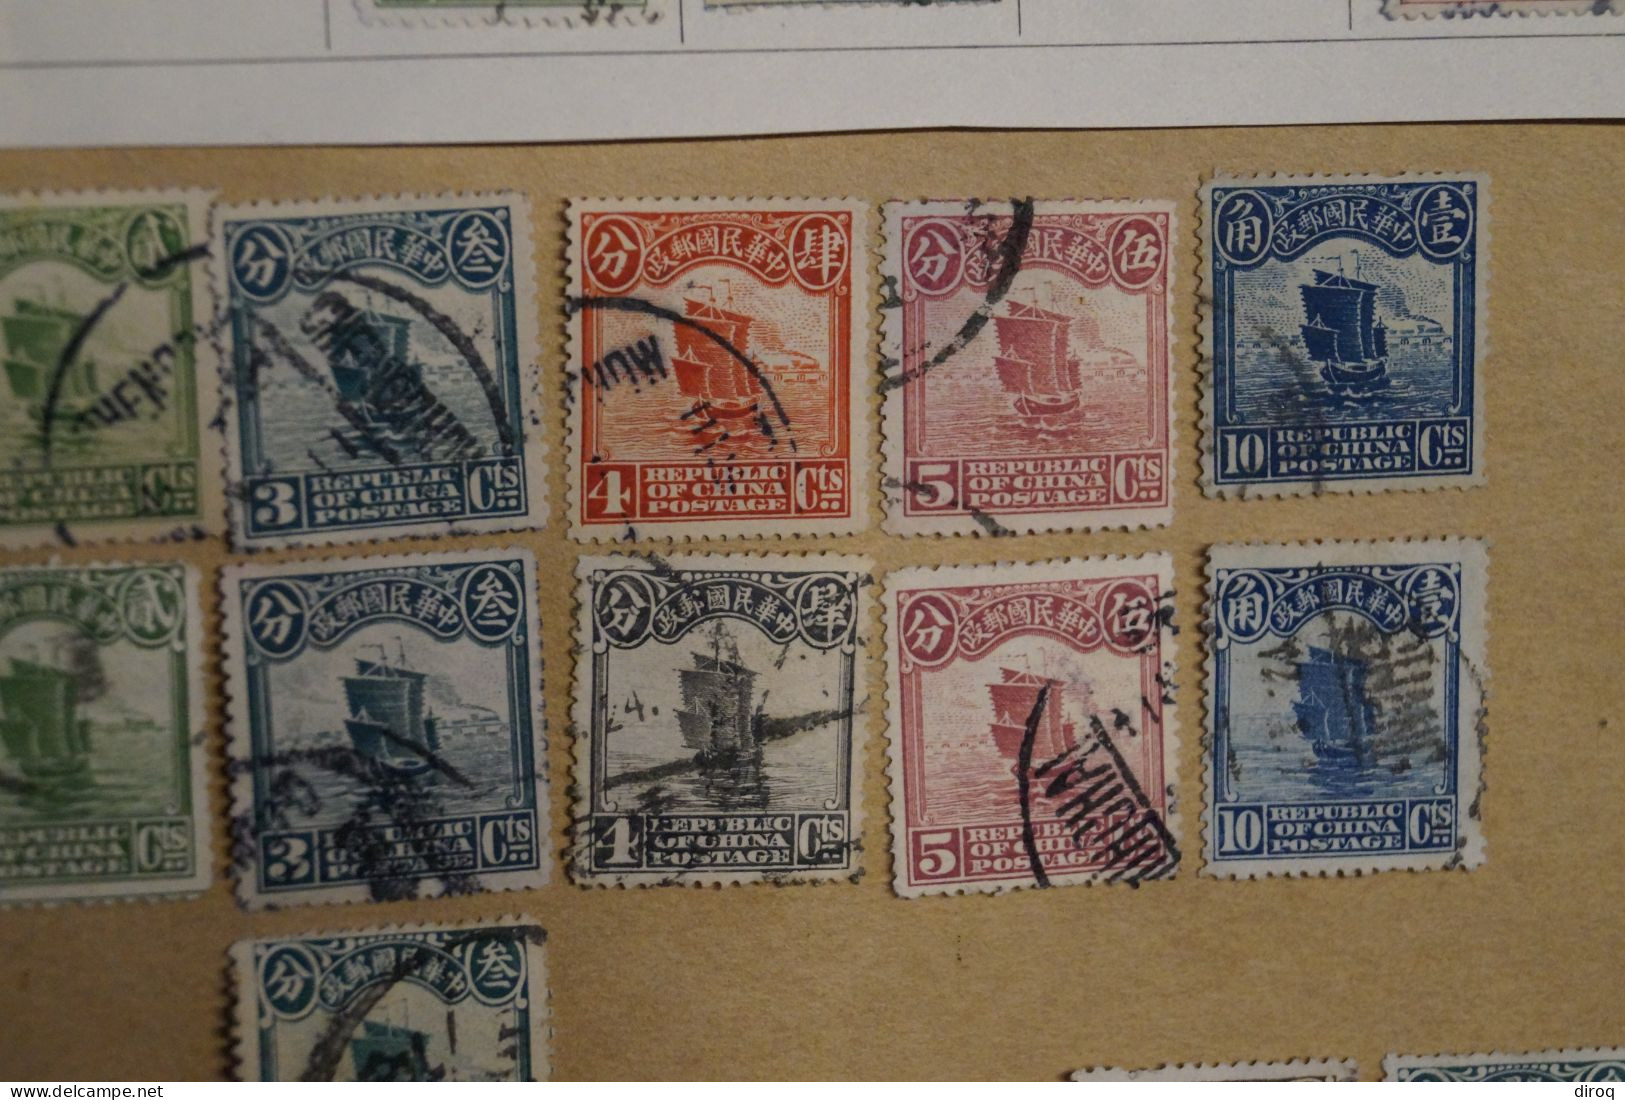 Chine,Chines,lot de 48 timbres oblitérés,1913 - 1923,certains avec surcharges, pour collection,collector